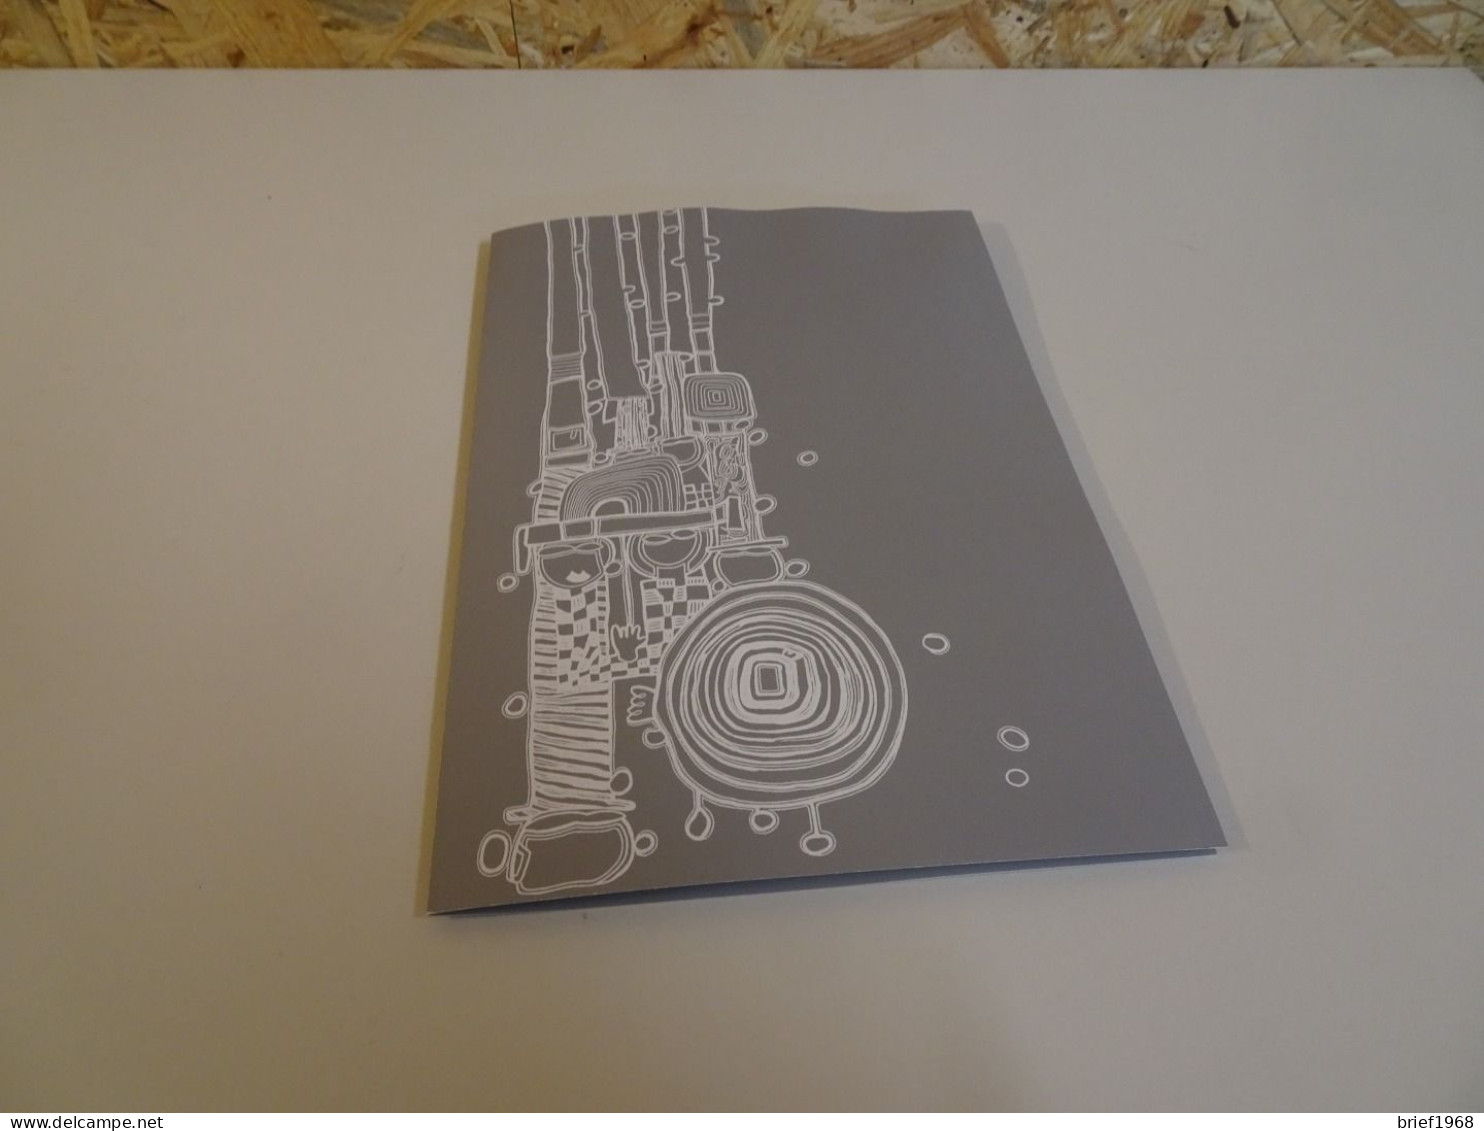 Österreich Block 15 Hundertwasser Folder Mit Schwarzdruck (23821) - Storia Postale